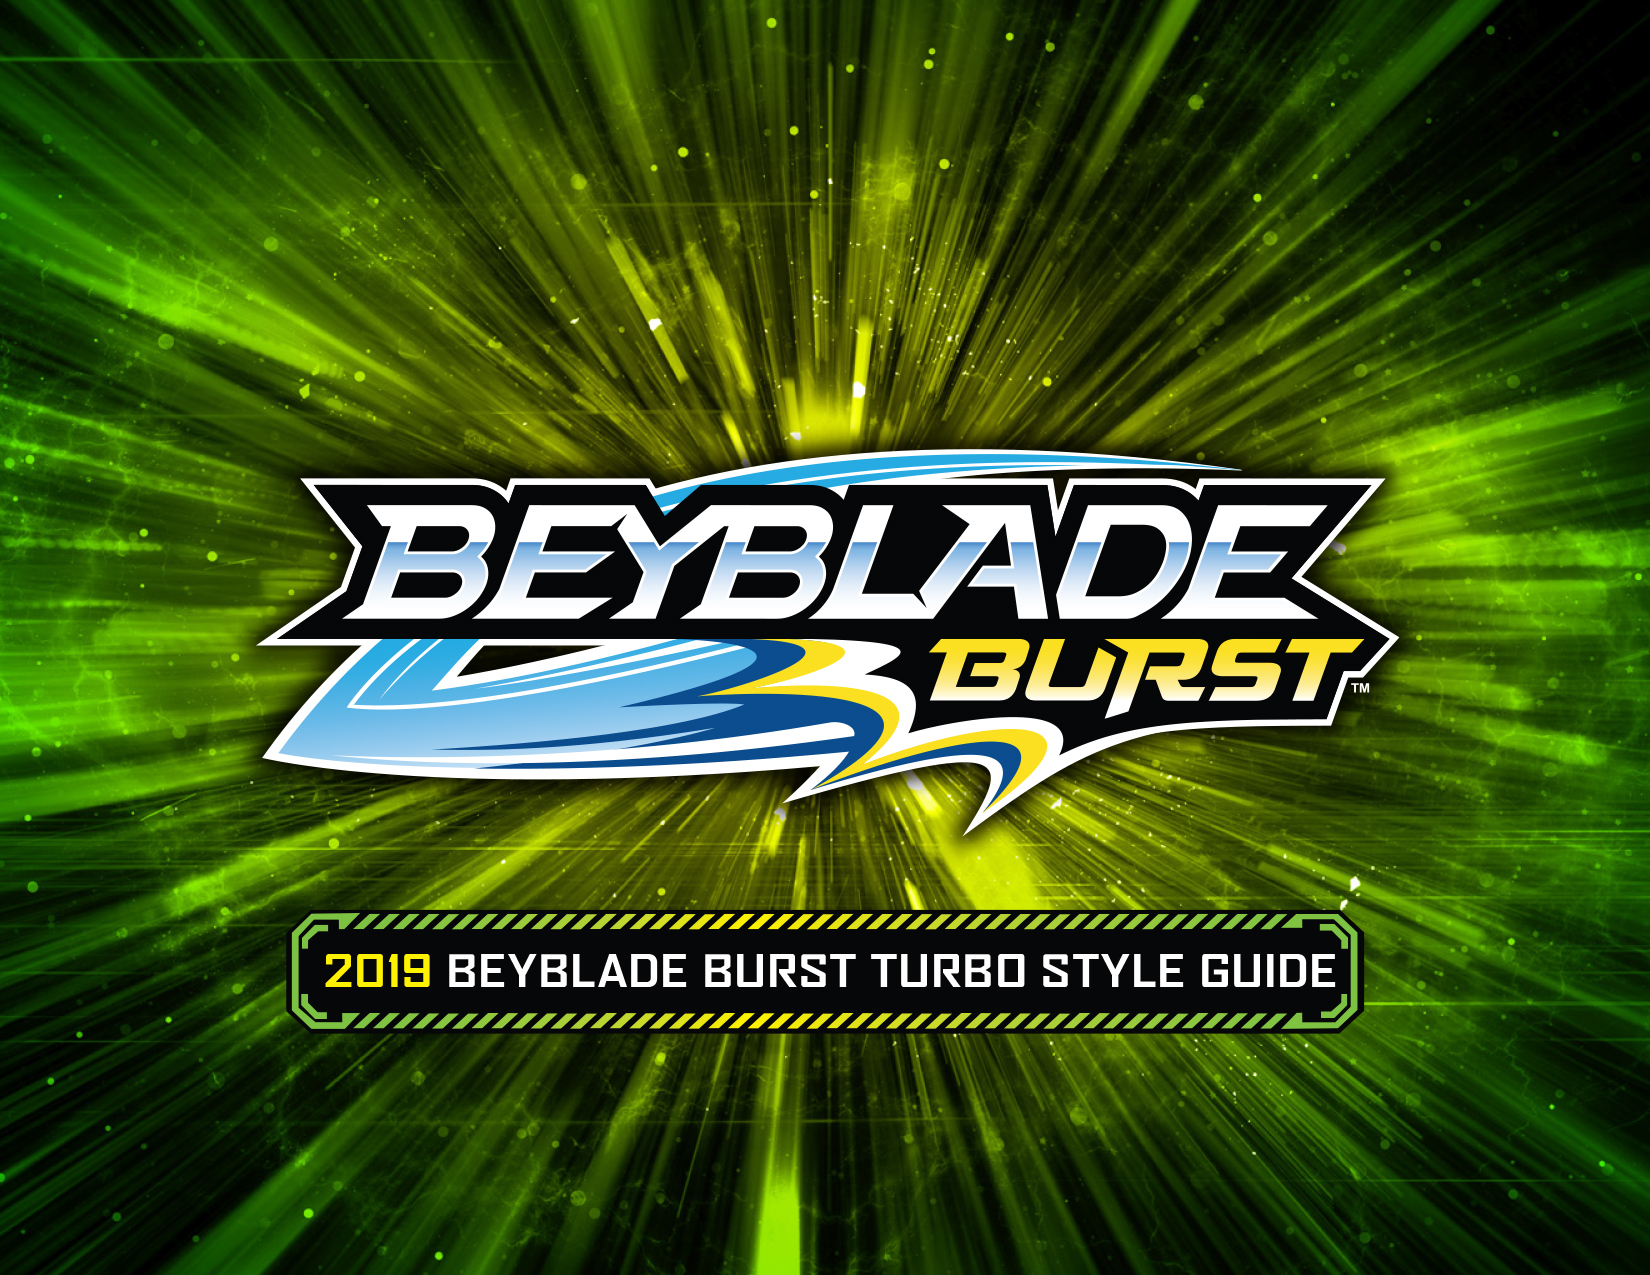 Beyblade Burst Global Brand Licensing Turbo Guide Cover